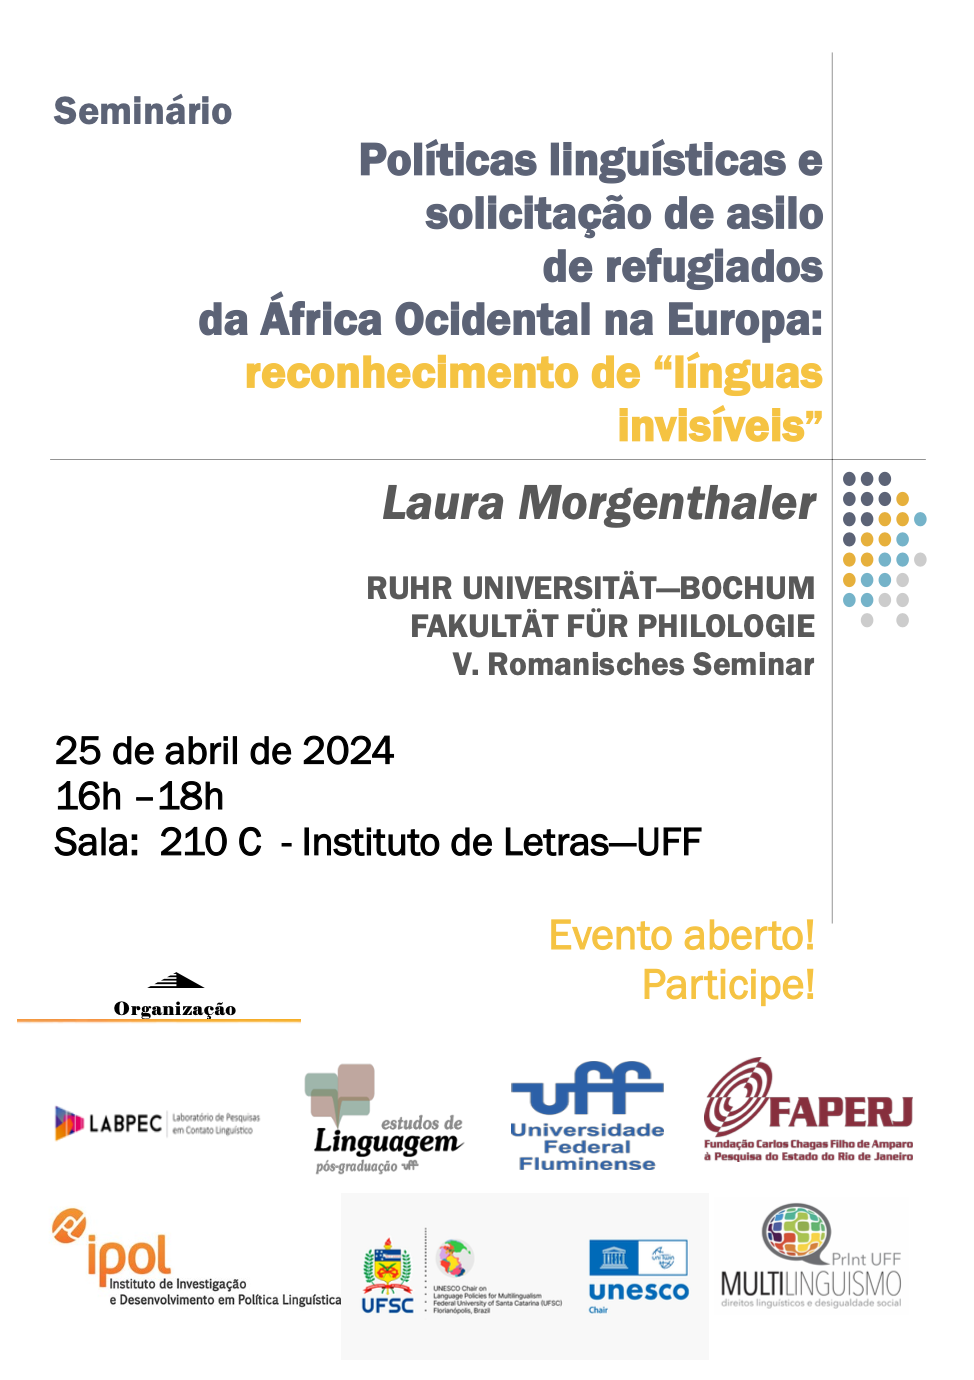 Seminário: Políticas linguísticas e solicitação de asilo de refugiados da África Ocidental na Europa: reconhecimento de “línguas invisíveis